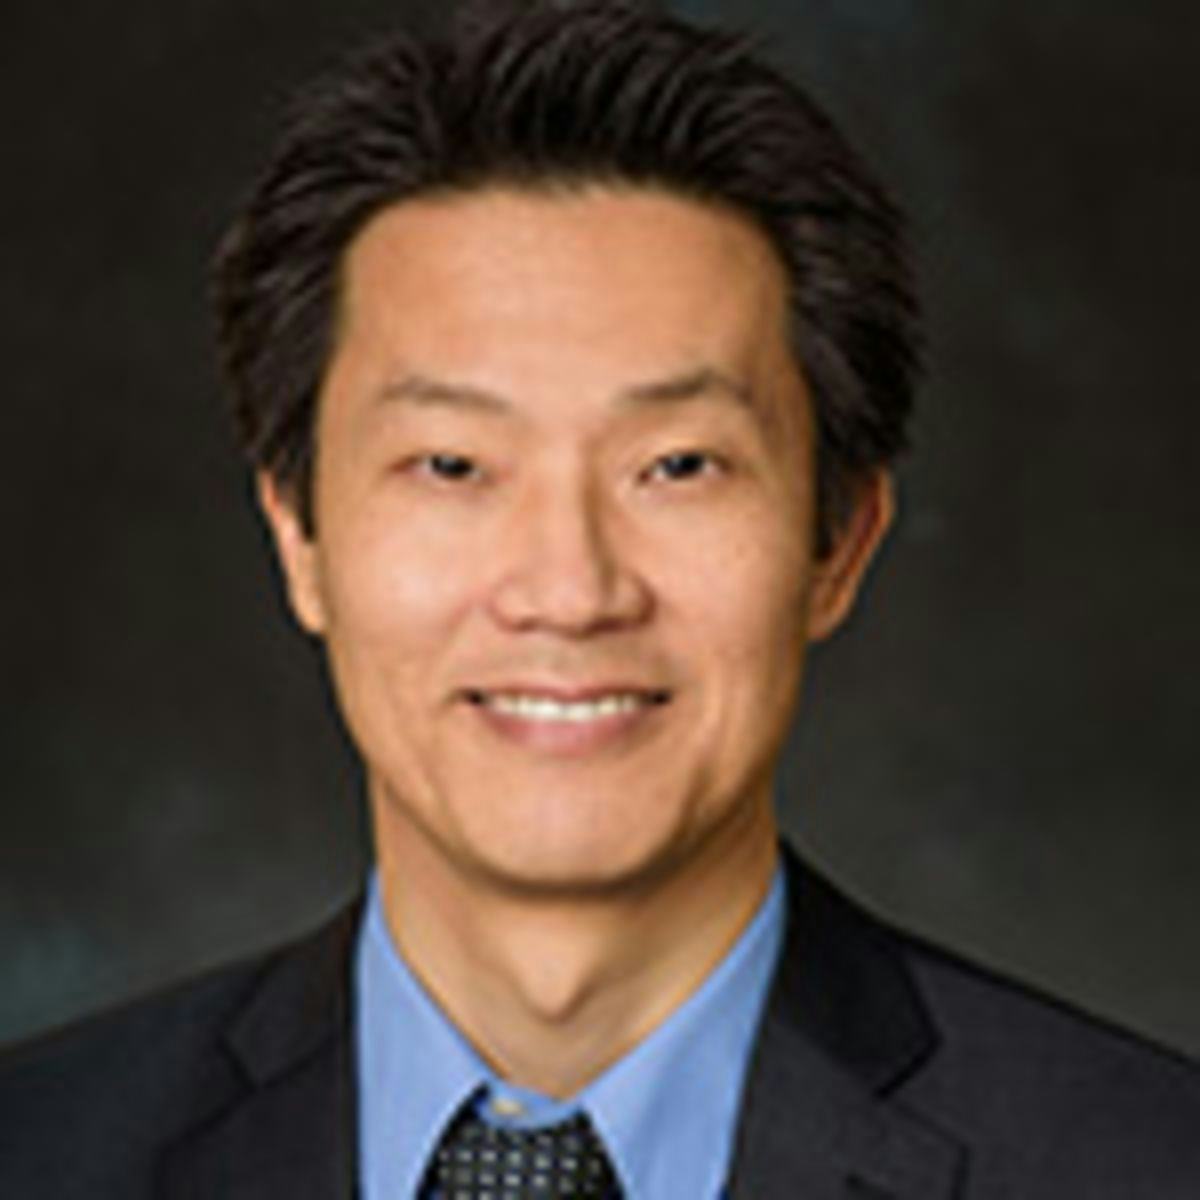 Dr. EH Yang